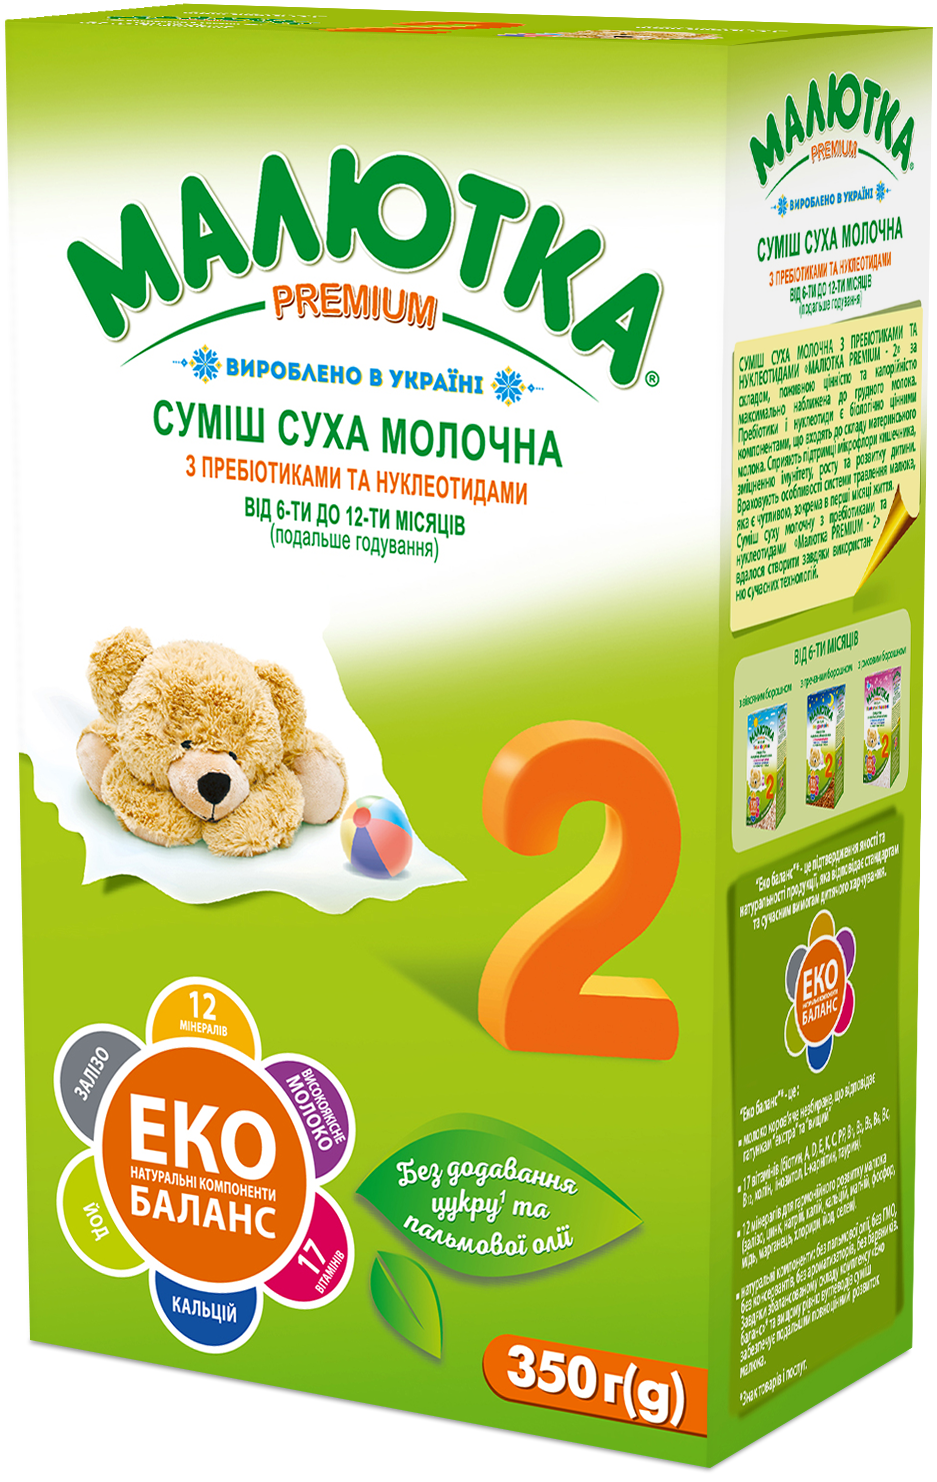 Суміш суха молочна з пребіотиками та нуклеотидами для харчування дітей від 6-ти до 12-ти місяців (подальше годування) 